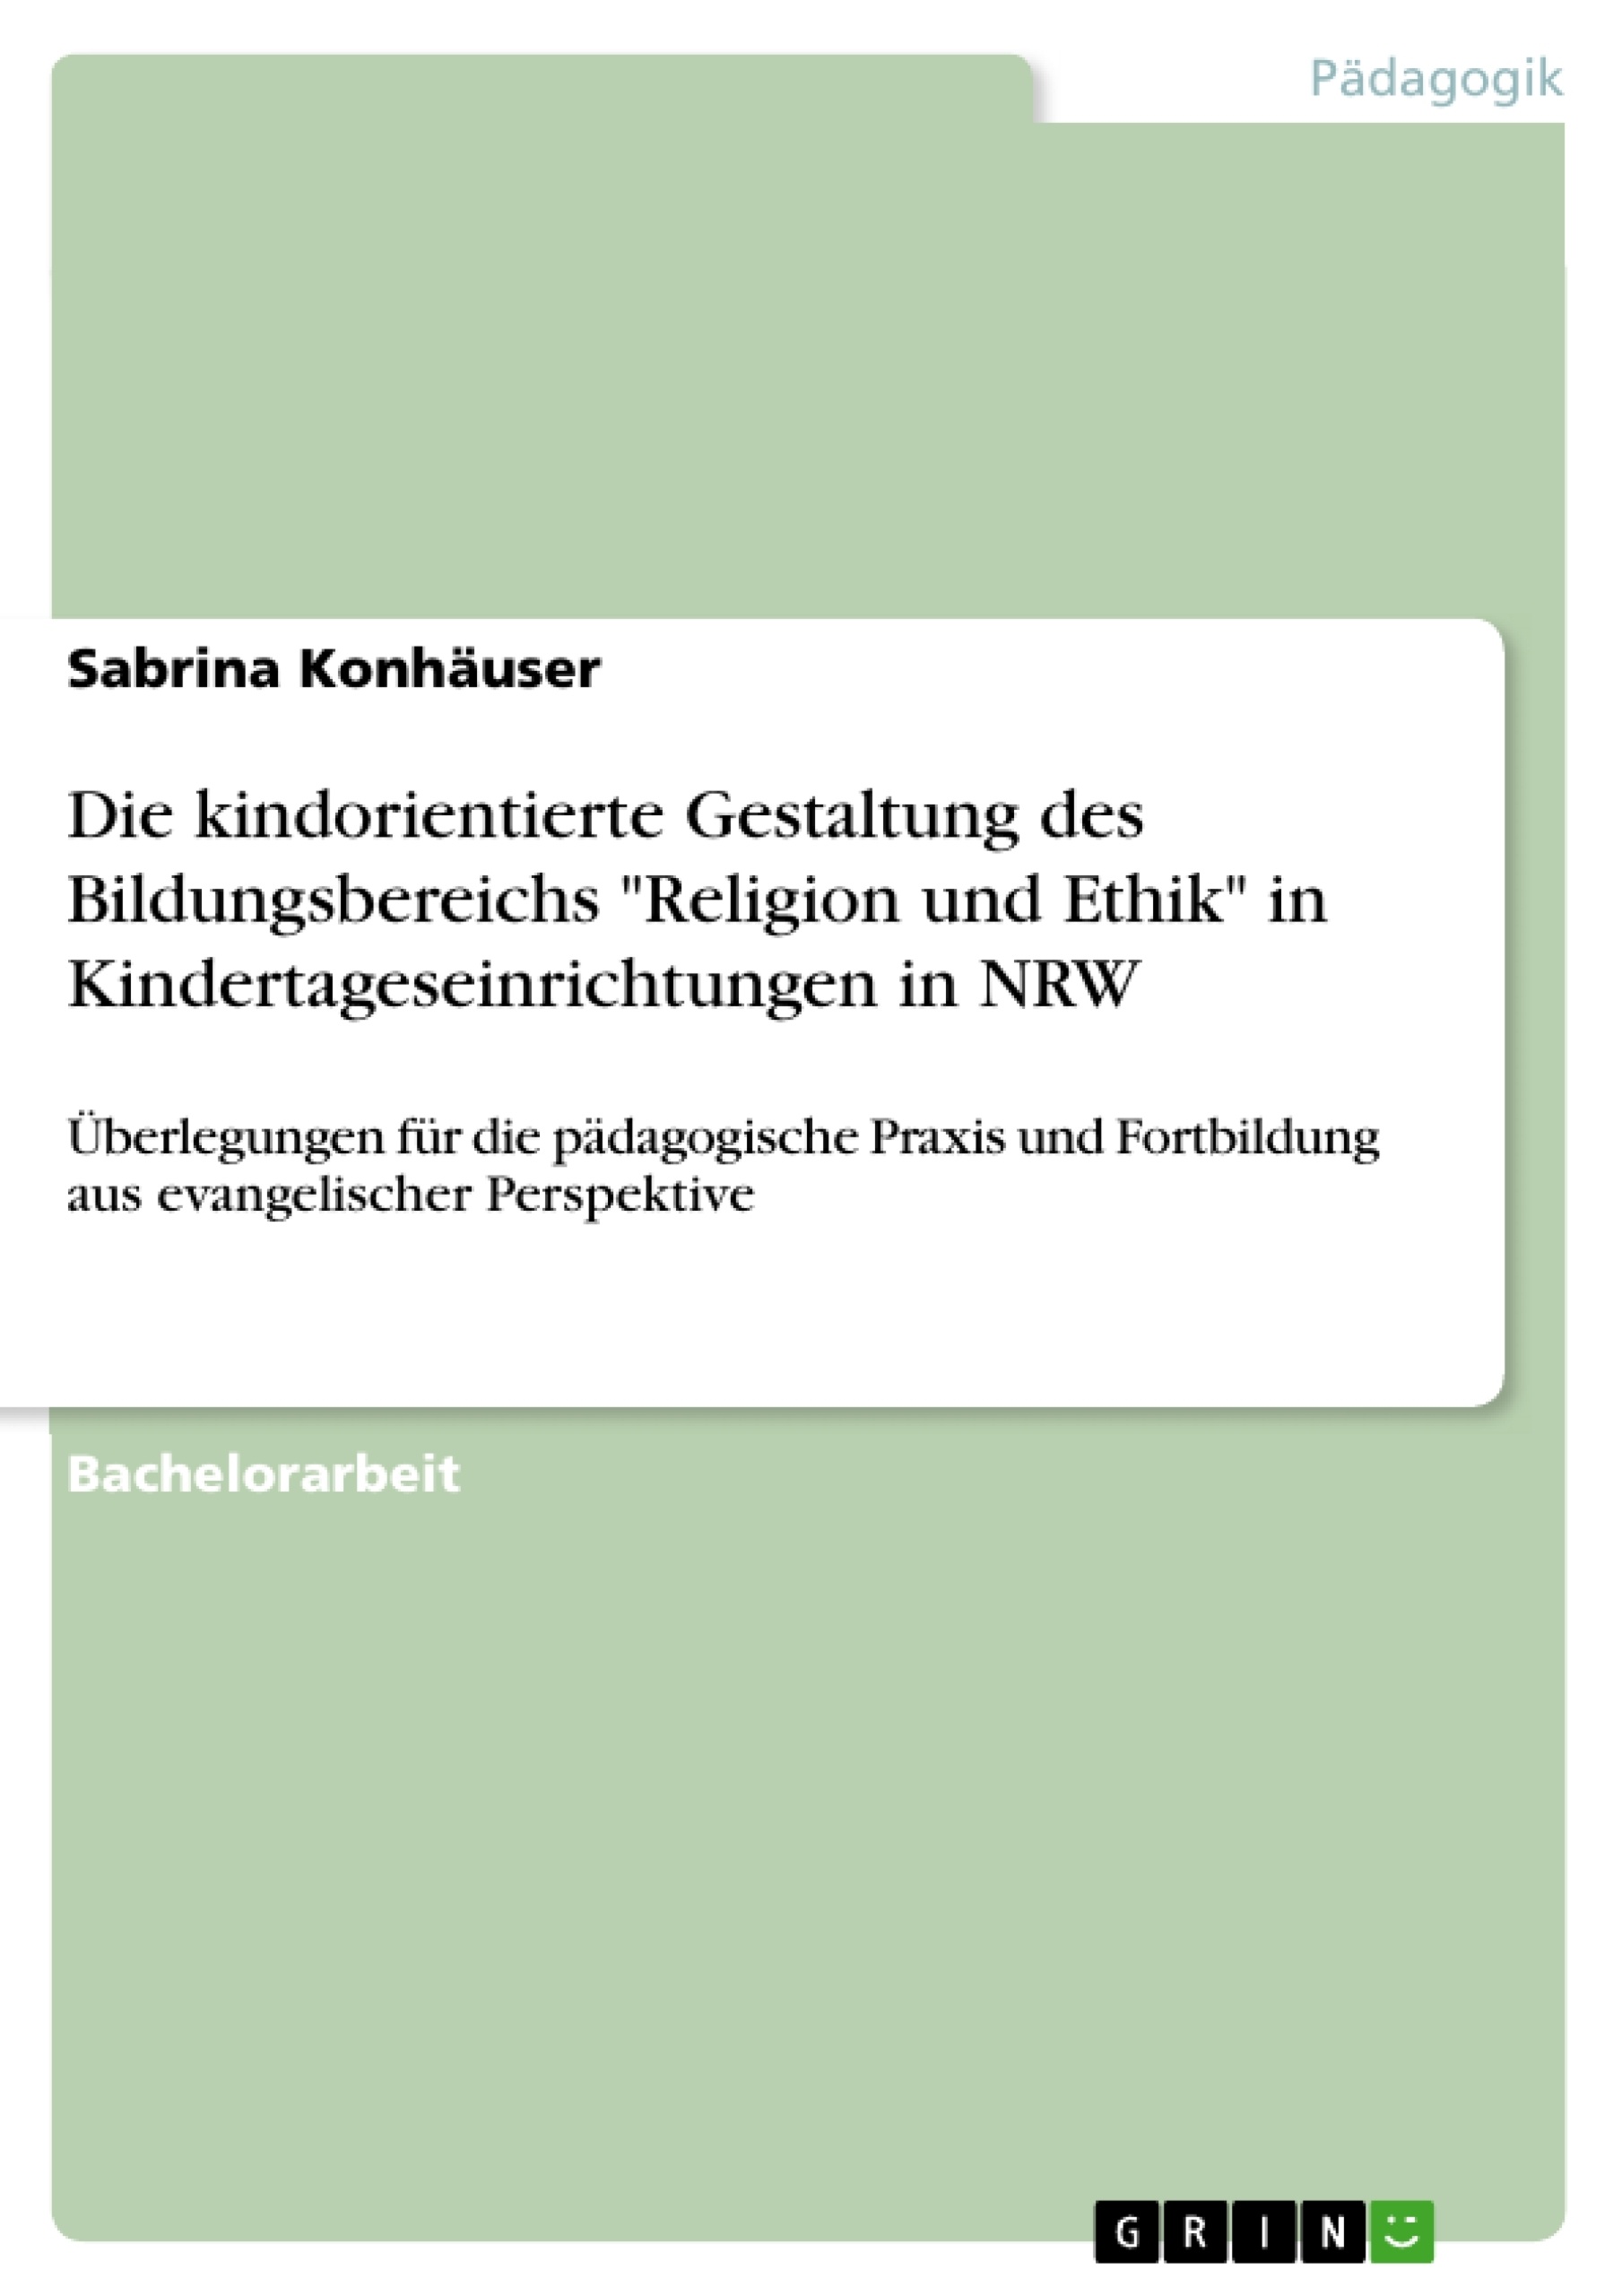 Title: Die kindorientierte Gestaltung des Bildungsbereichs "Religion und Ethik" in Kindertageseinrichtungen in NRW